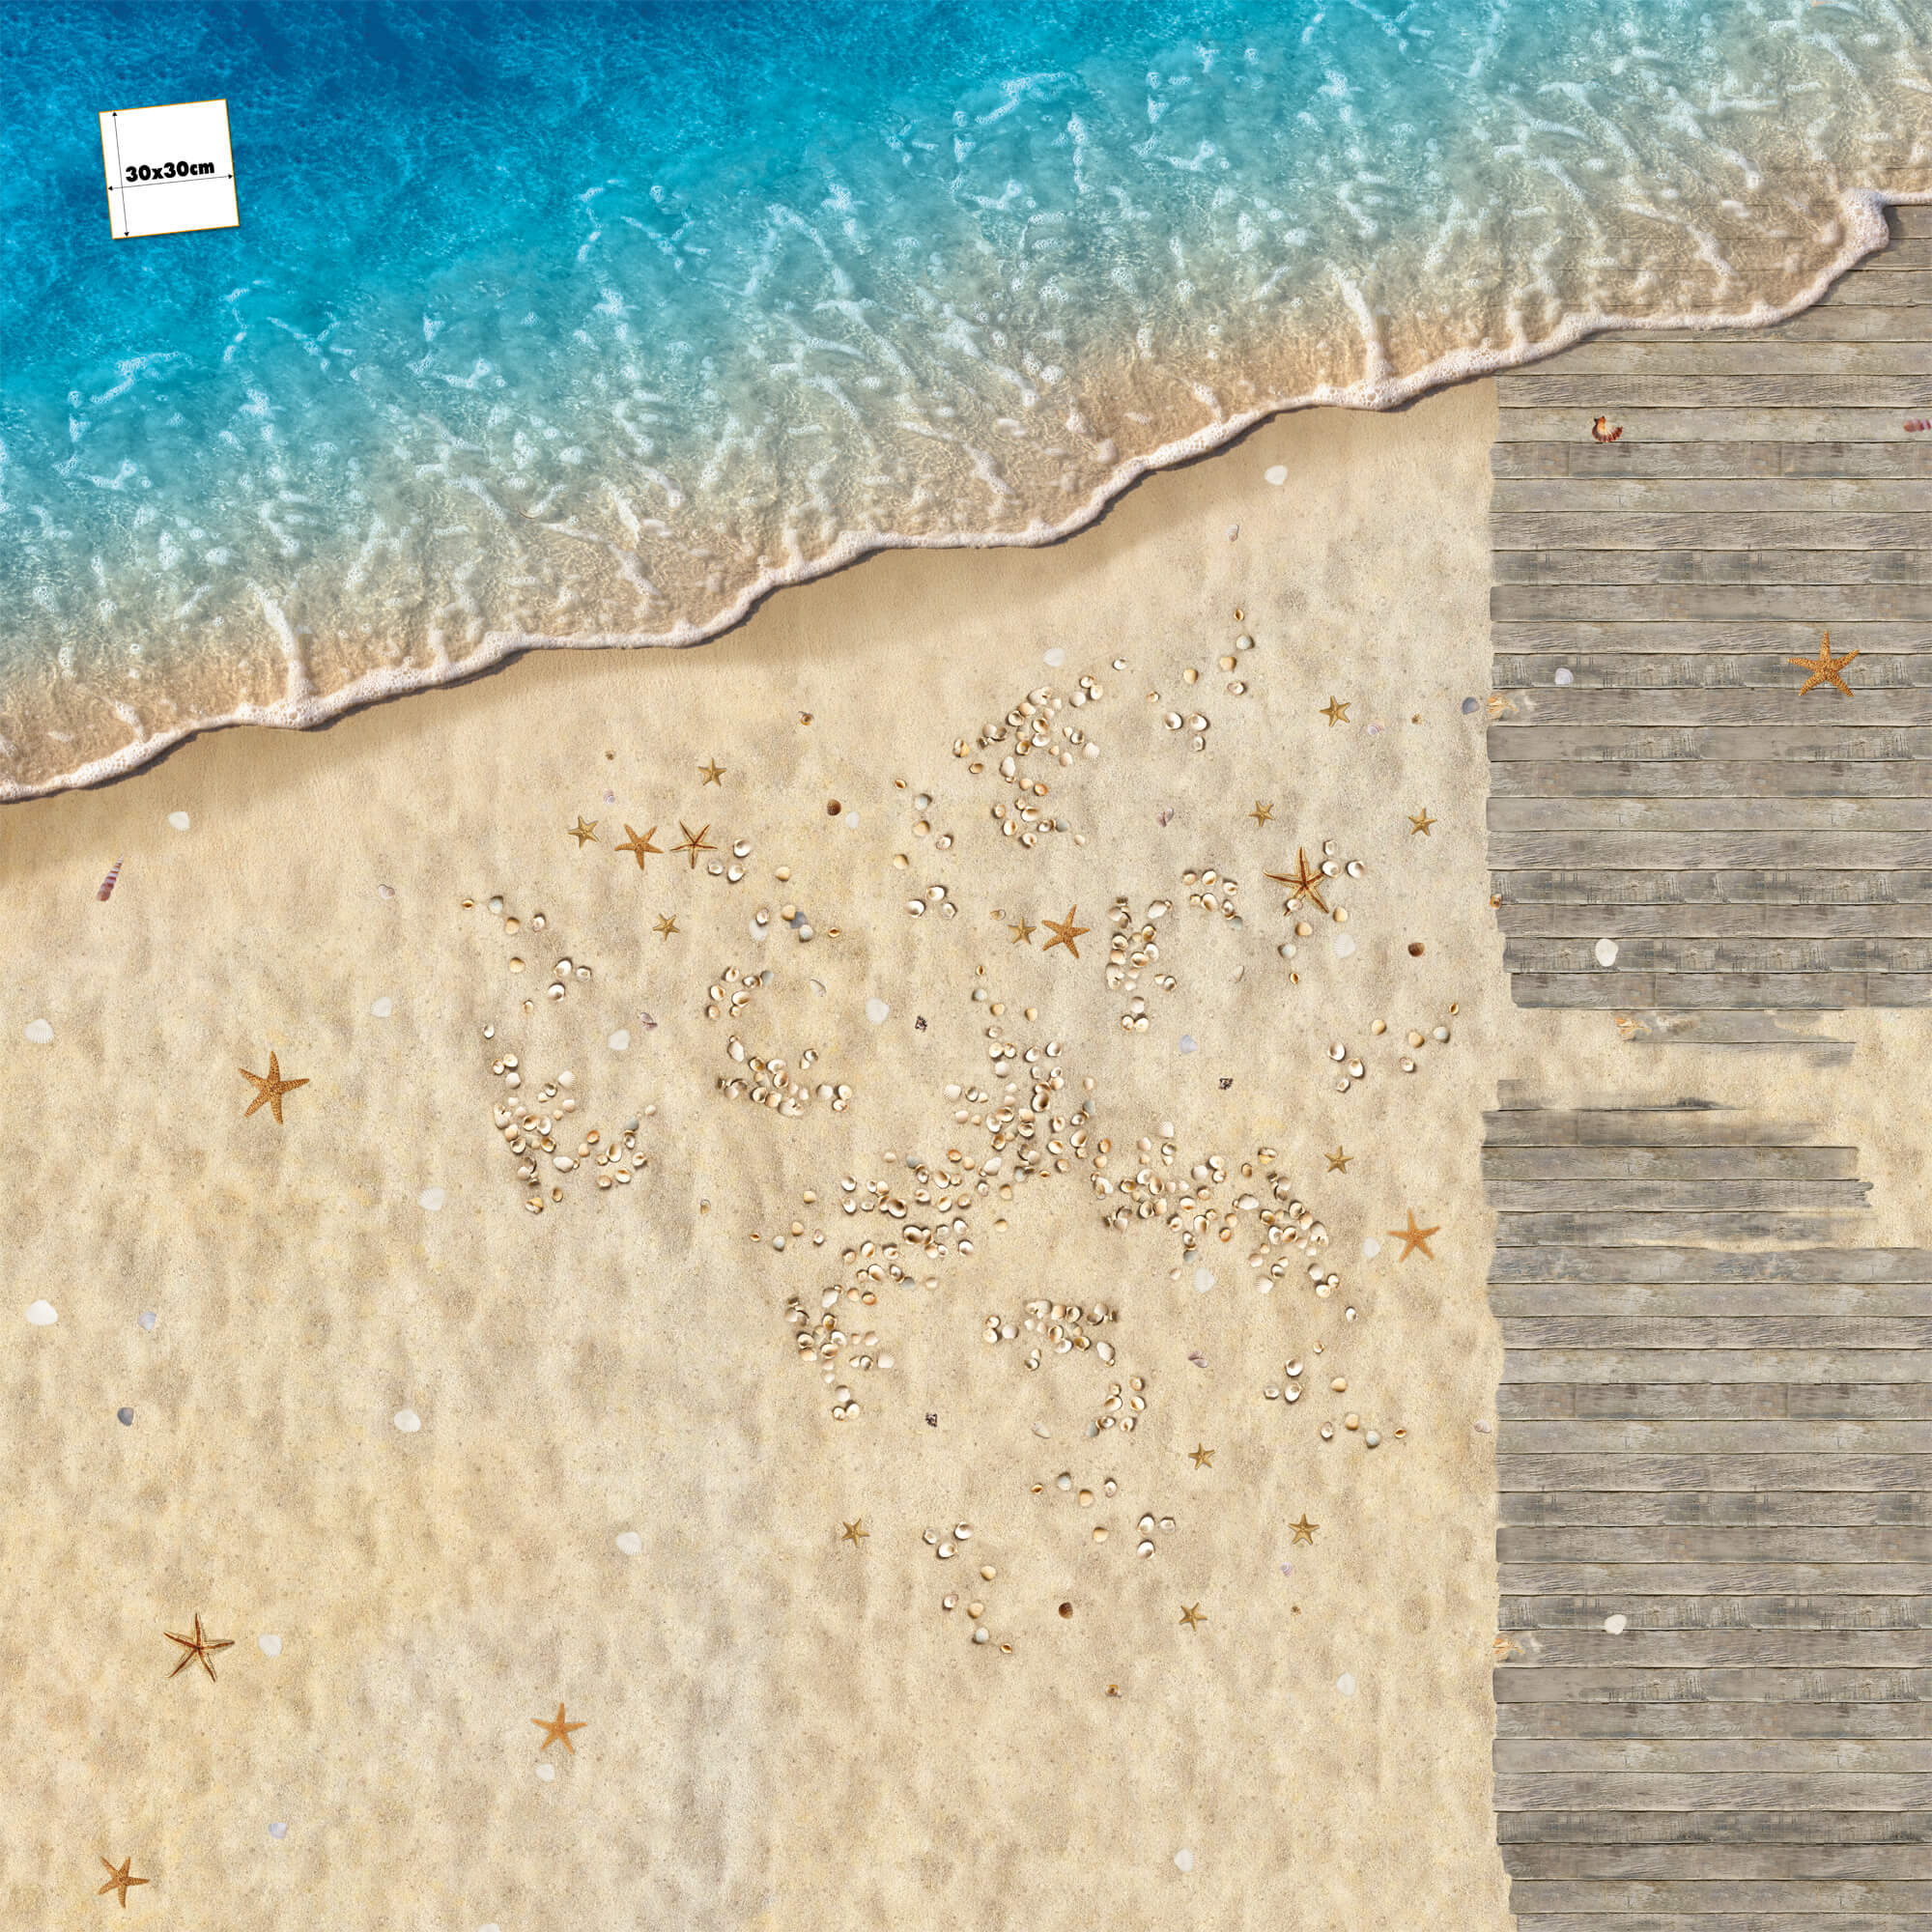 FOTOBODEN™ Strand mit Muscheln und Steg, Draufsicht, Bodenfläche, fotorealistisch